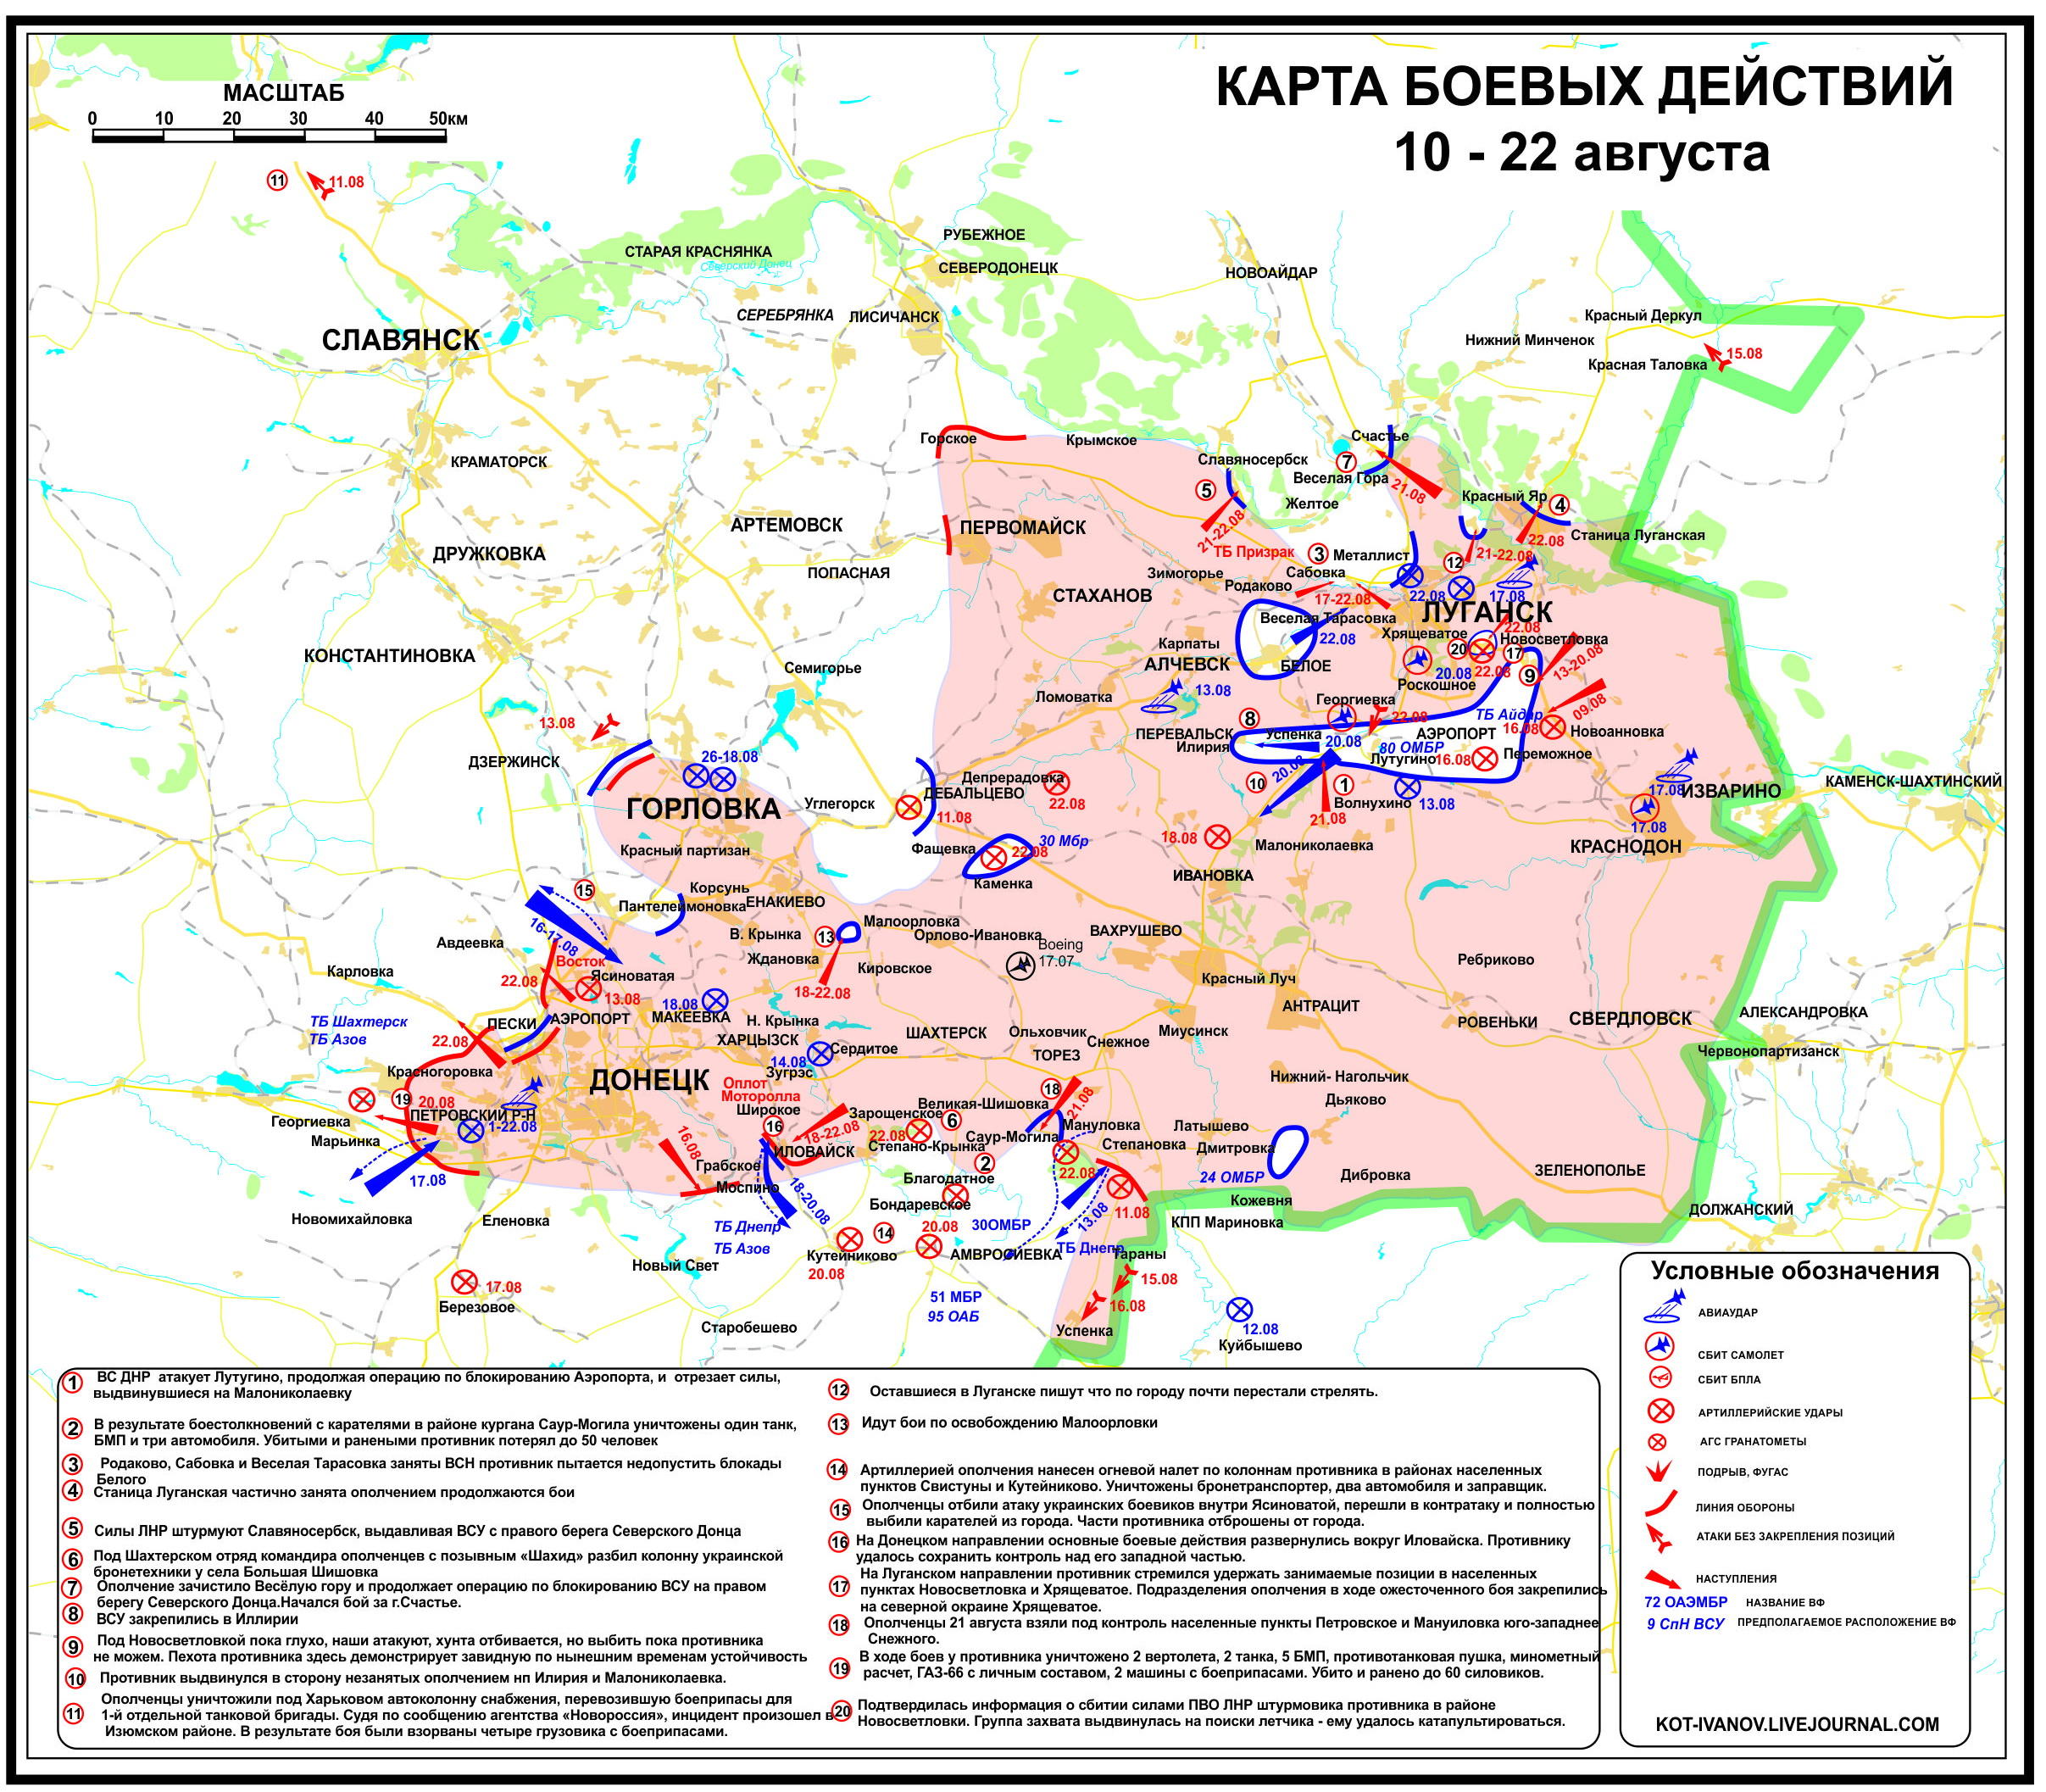 Situation_in_der_Ostukraine_zum_zweiundzwanzigsten_August_aus_Separatistensicht.jpg